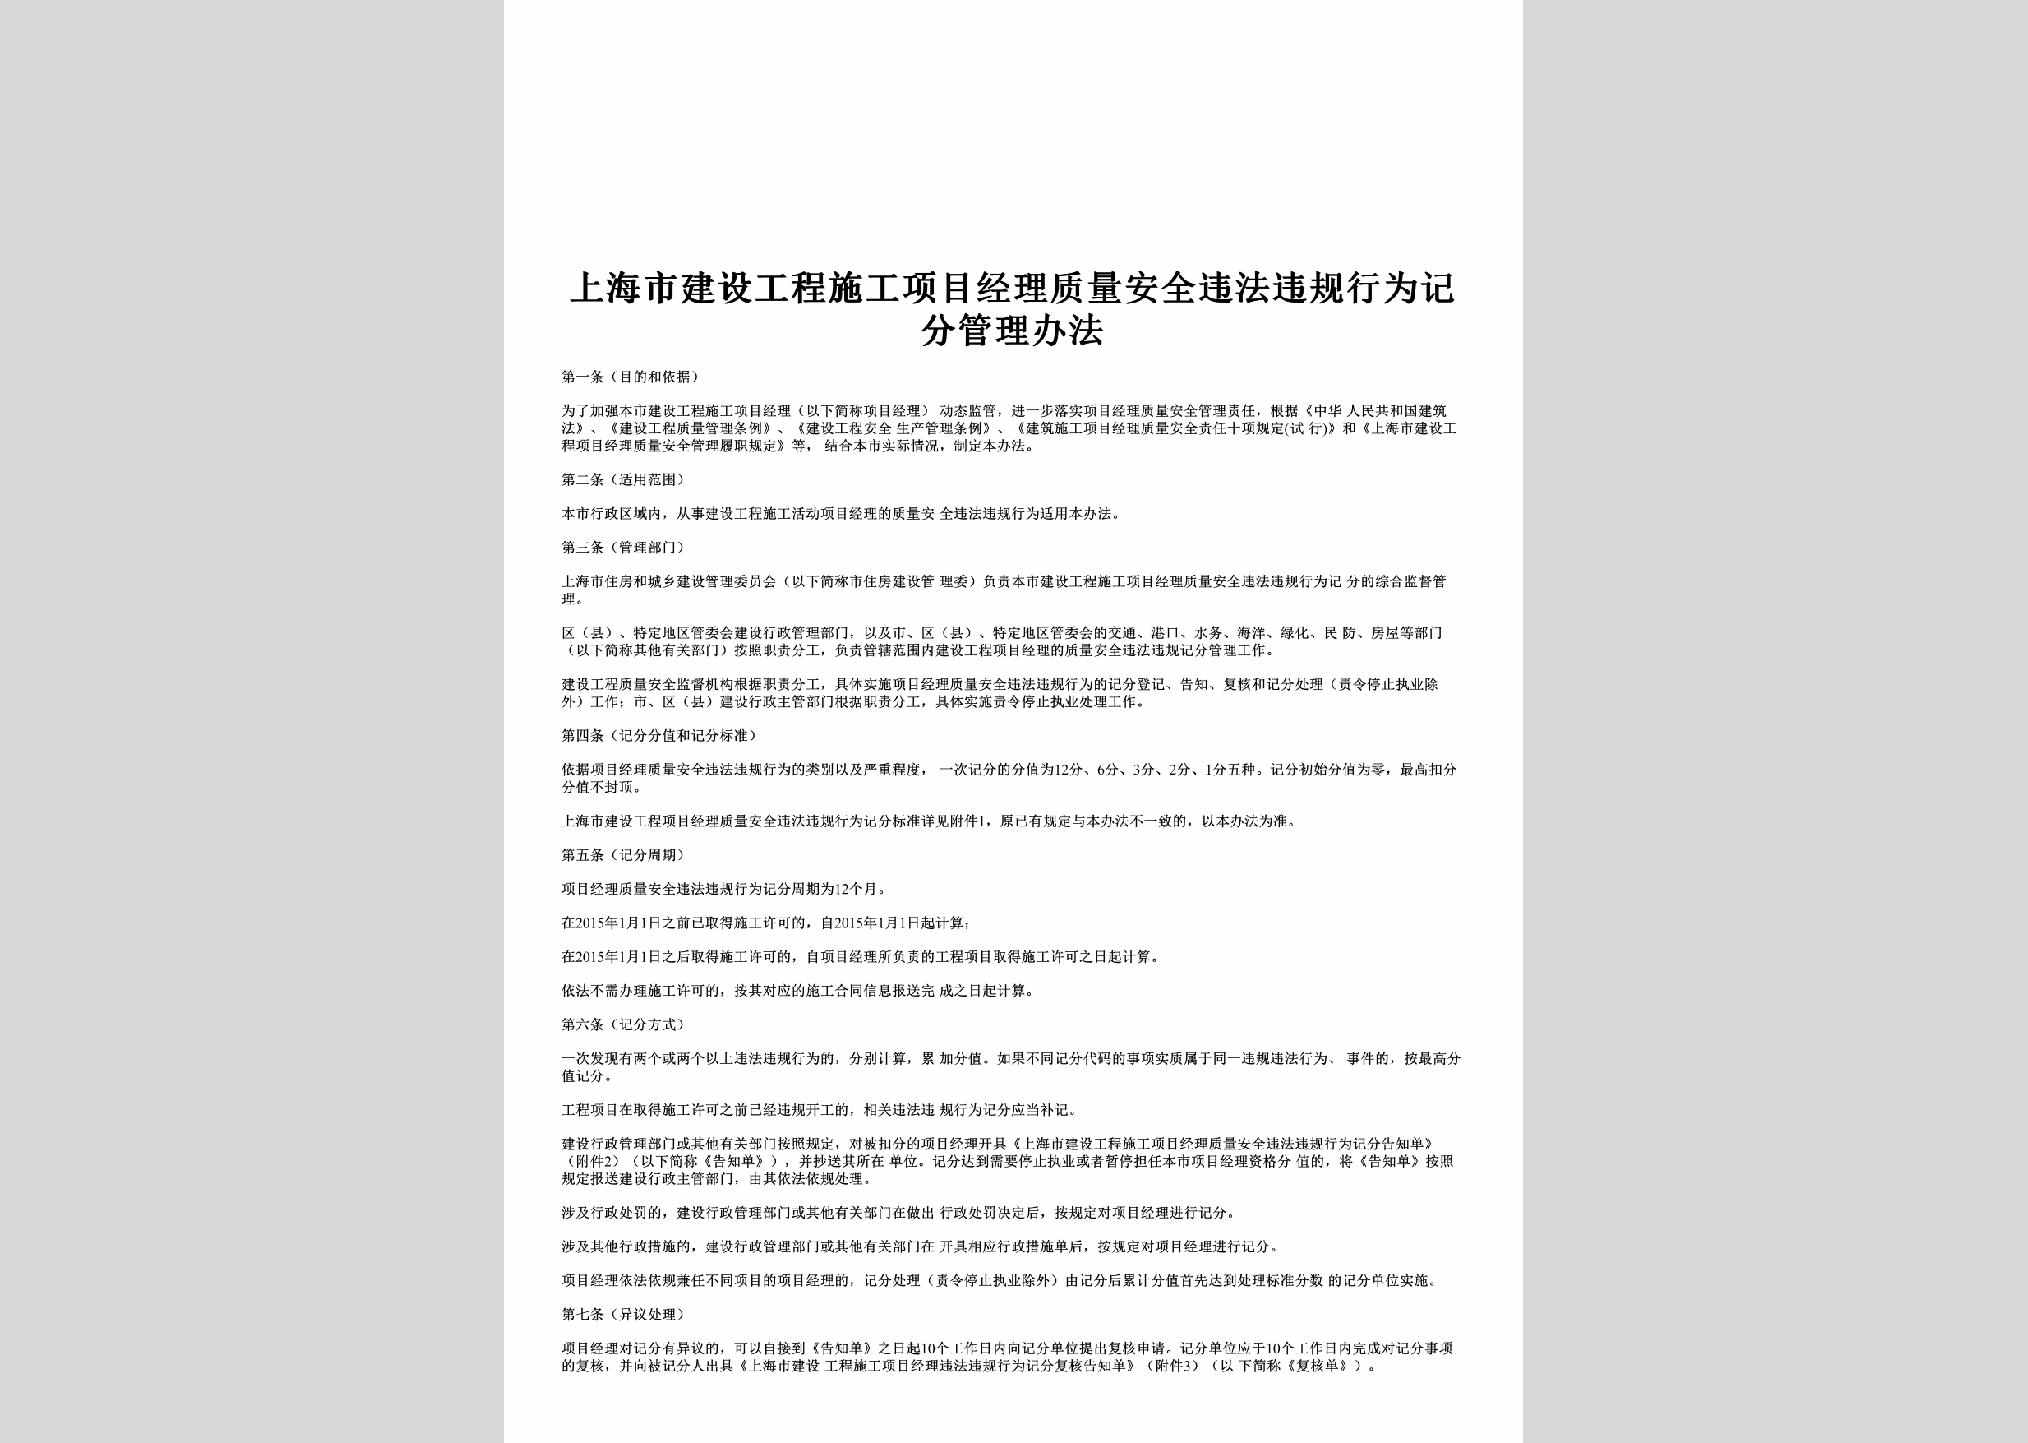 SH-SGZLGLBF-2017：上海市建设工程施工项目经理质量安全违法违规行为记分管理办法